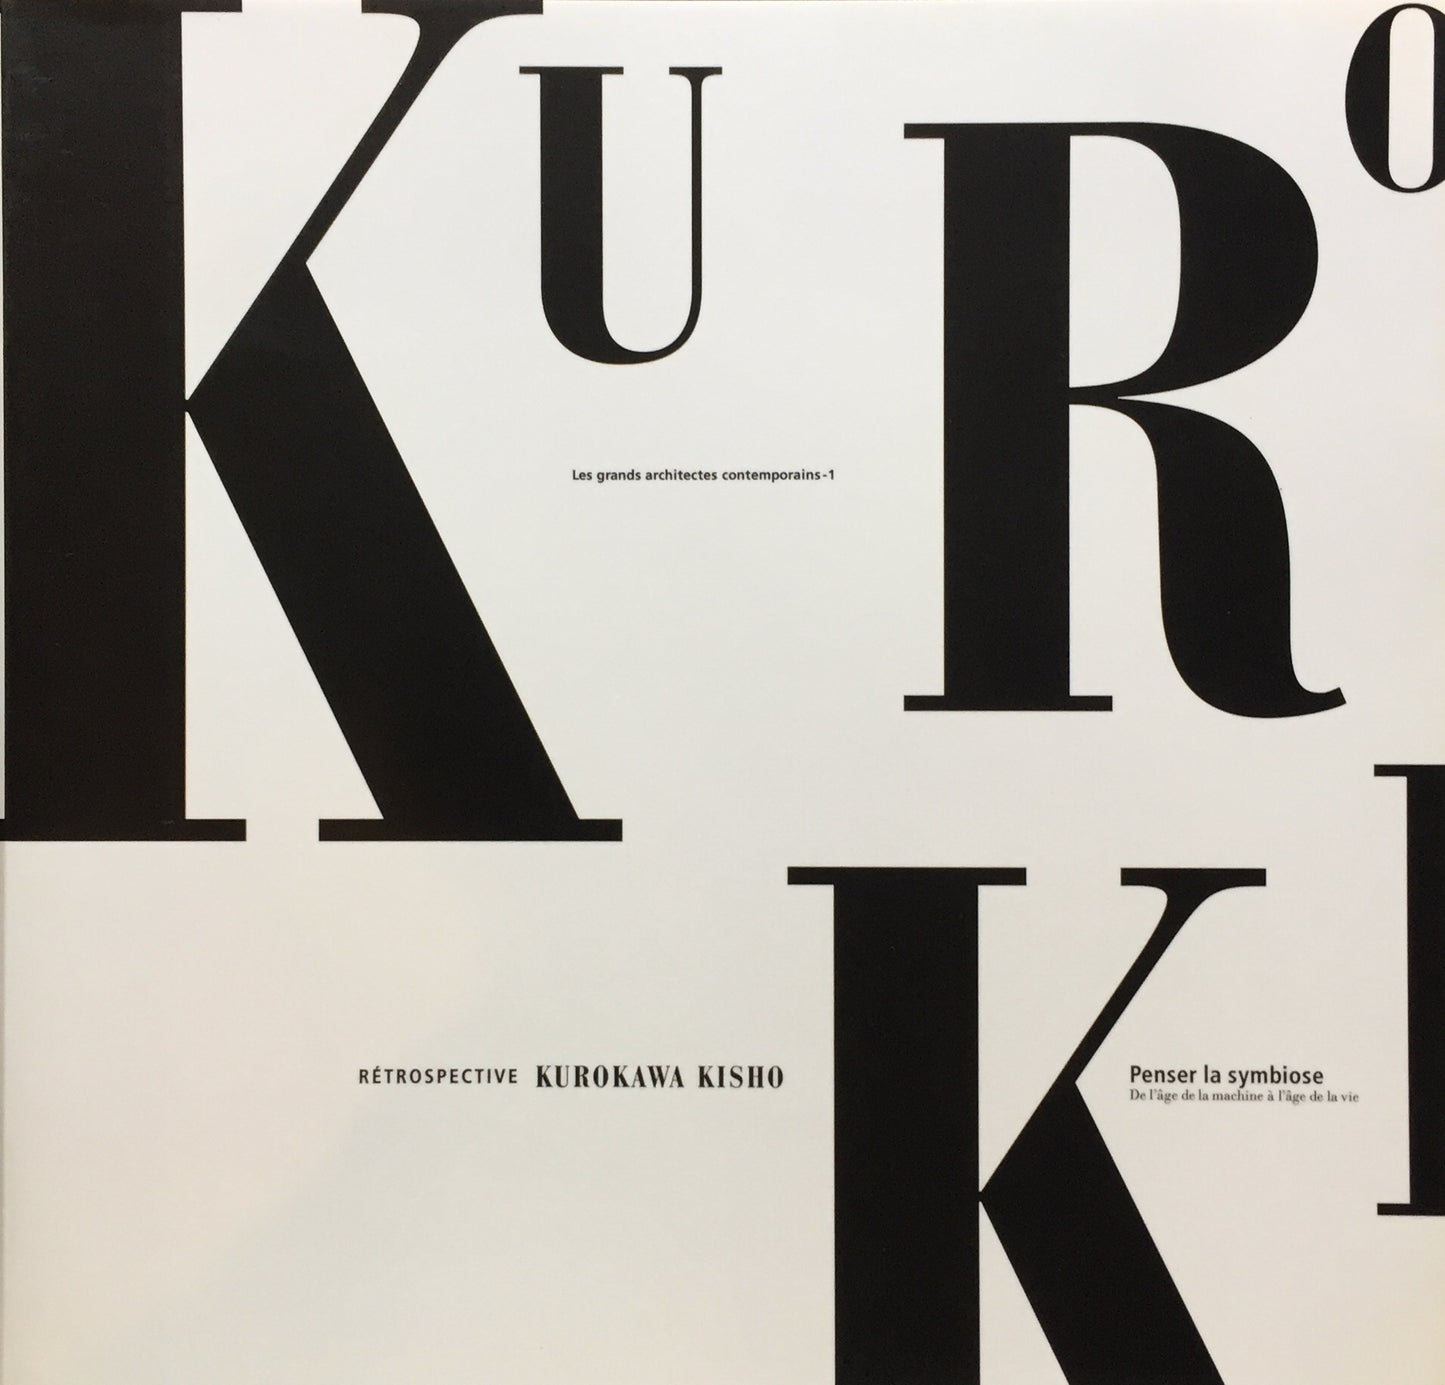 Retrospective Kurokawa Kisho Penser la symbiose